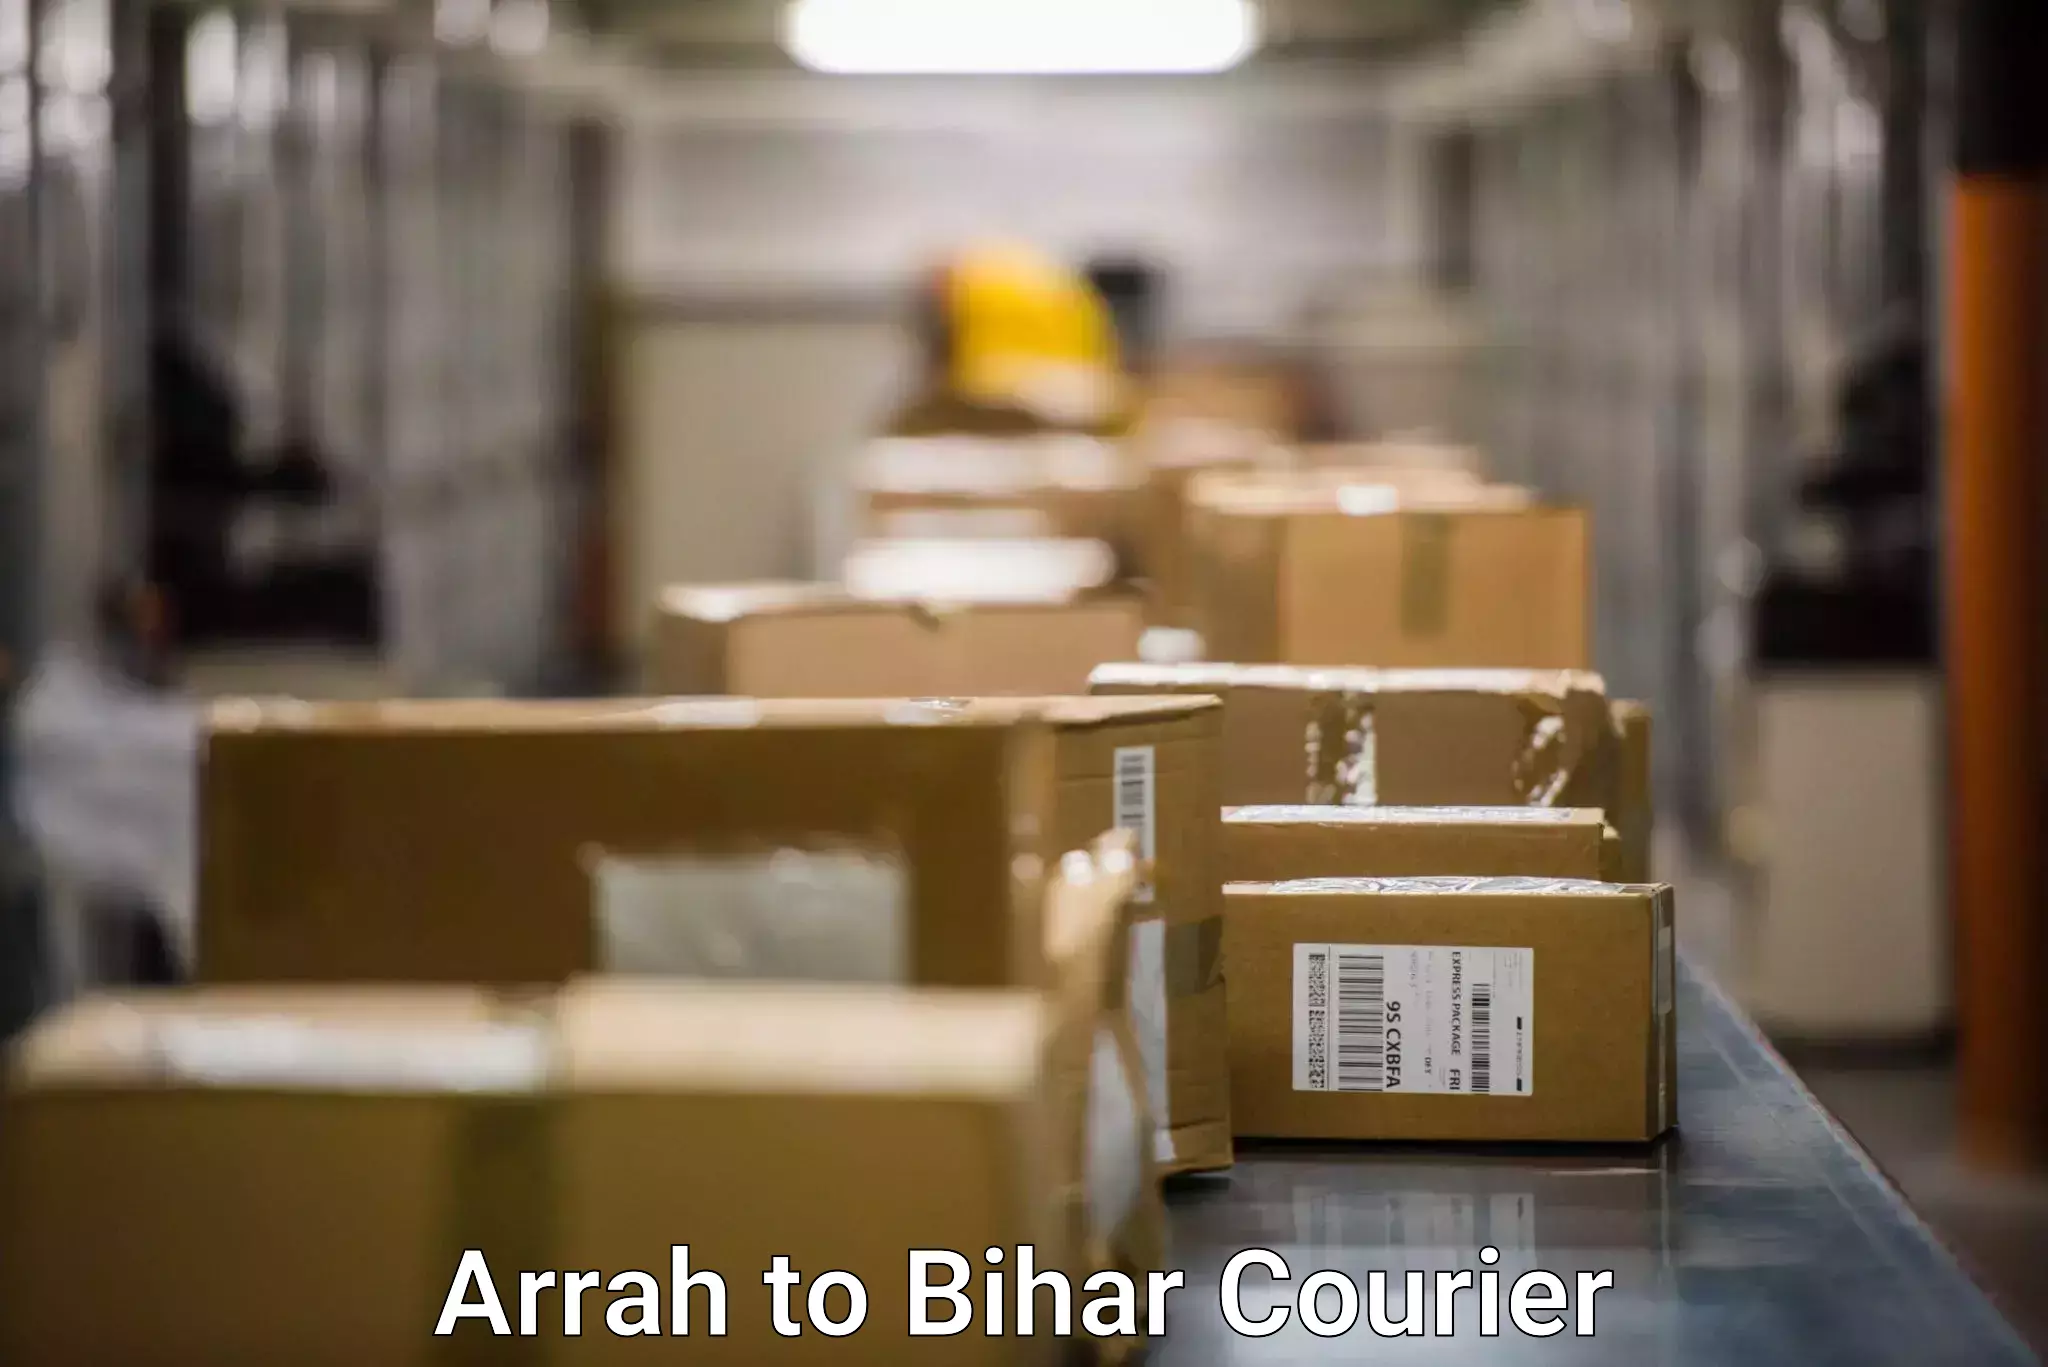 Individual parcel service Arrah to Chakai